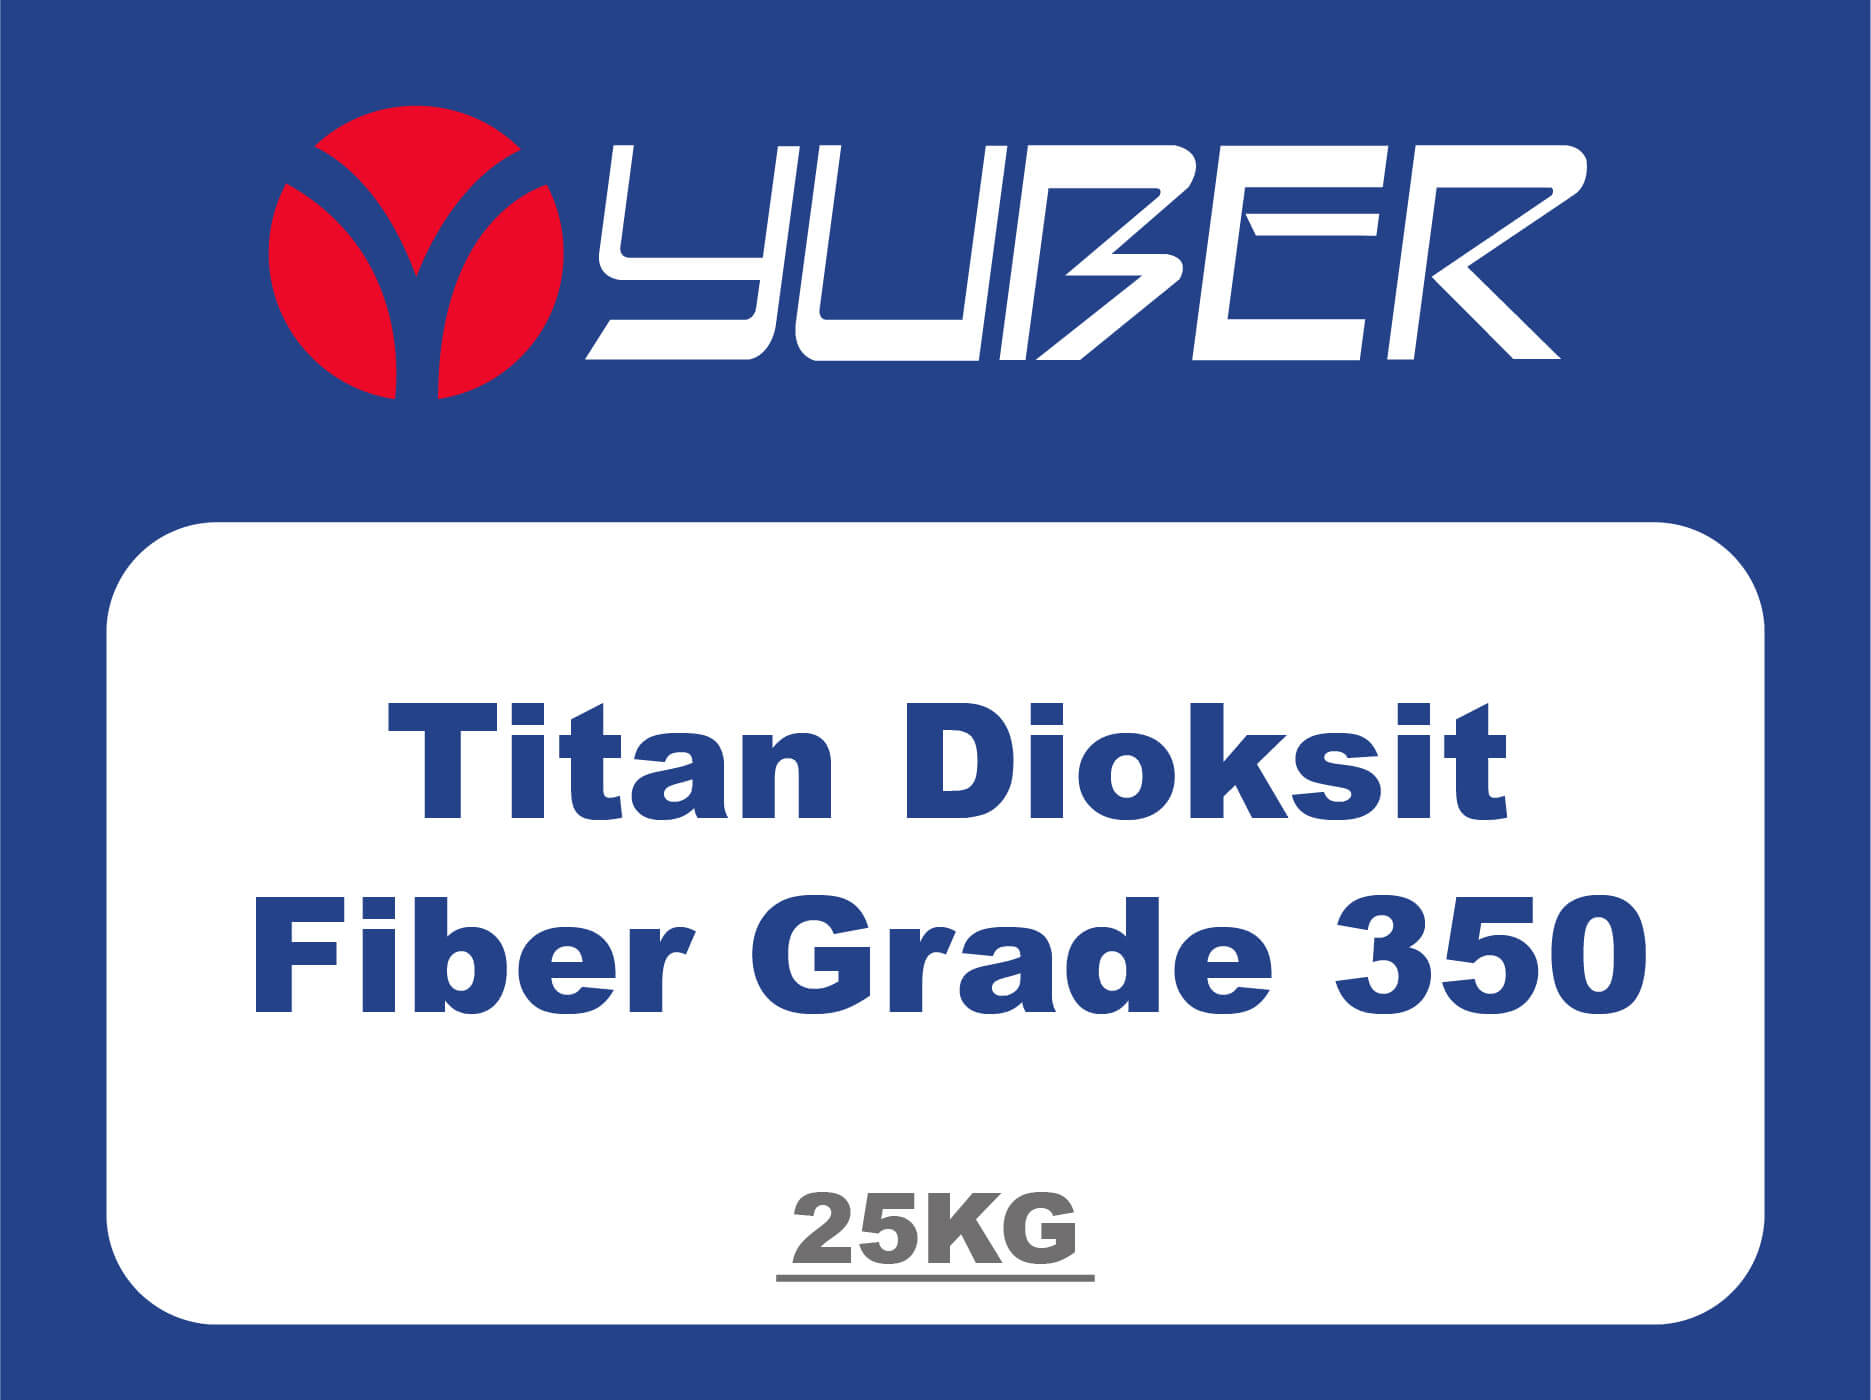 Titan Dioksit Fiber Grade 350 Yuber Kimya